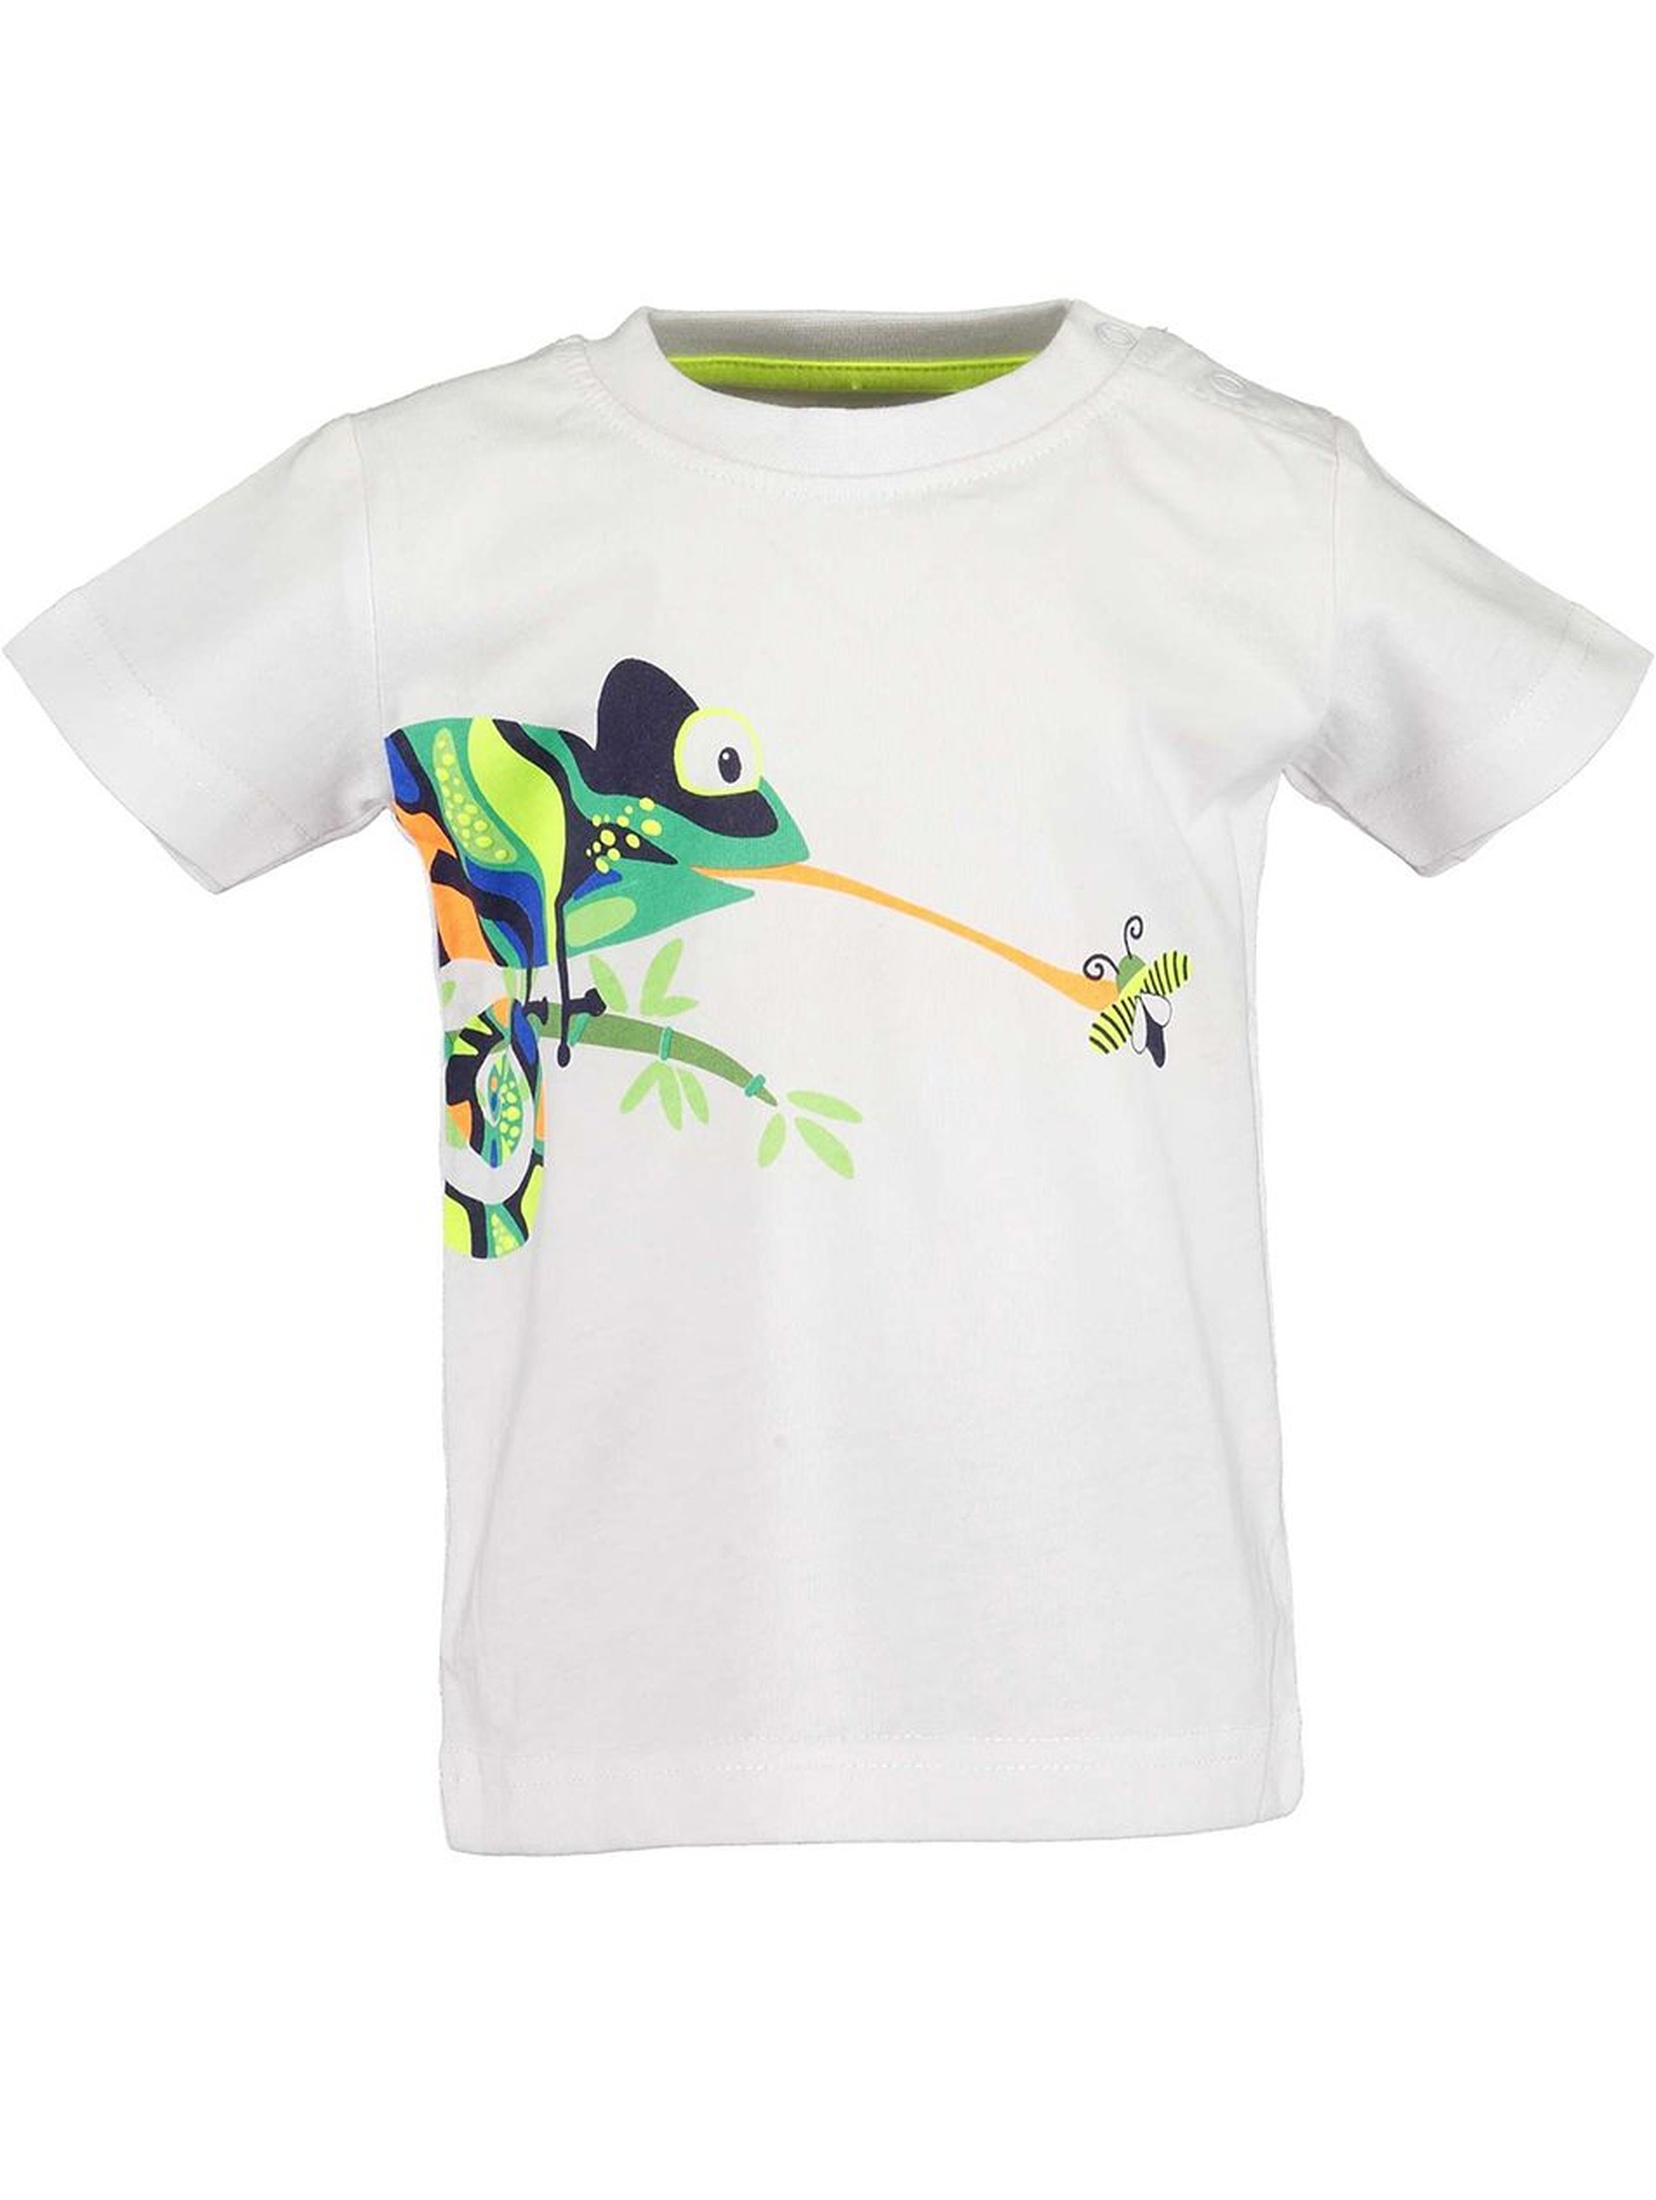 Koszulka chłopięca biała z kameleonem